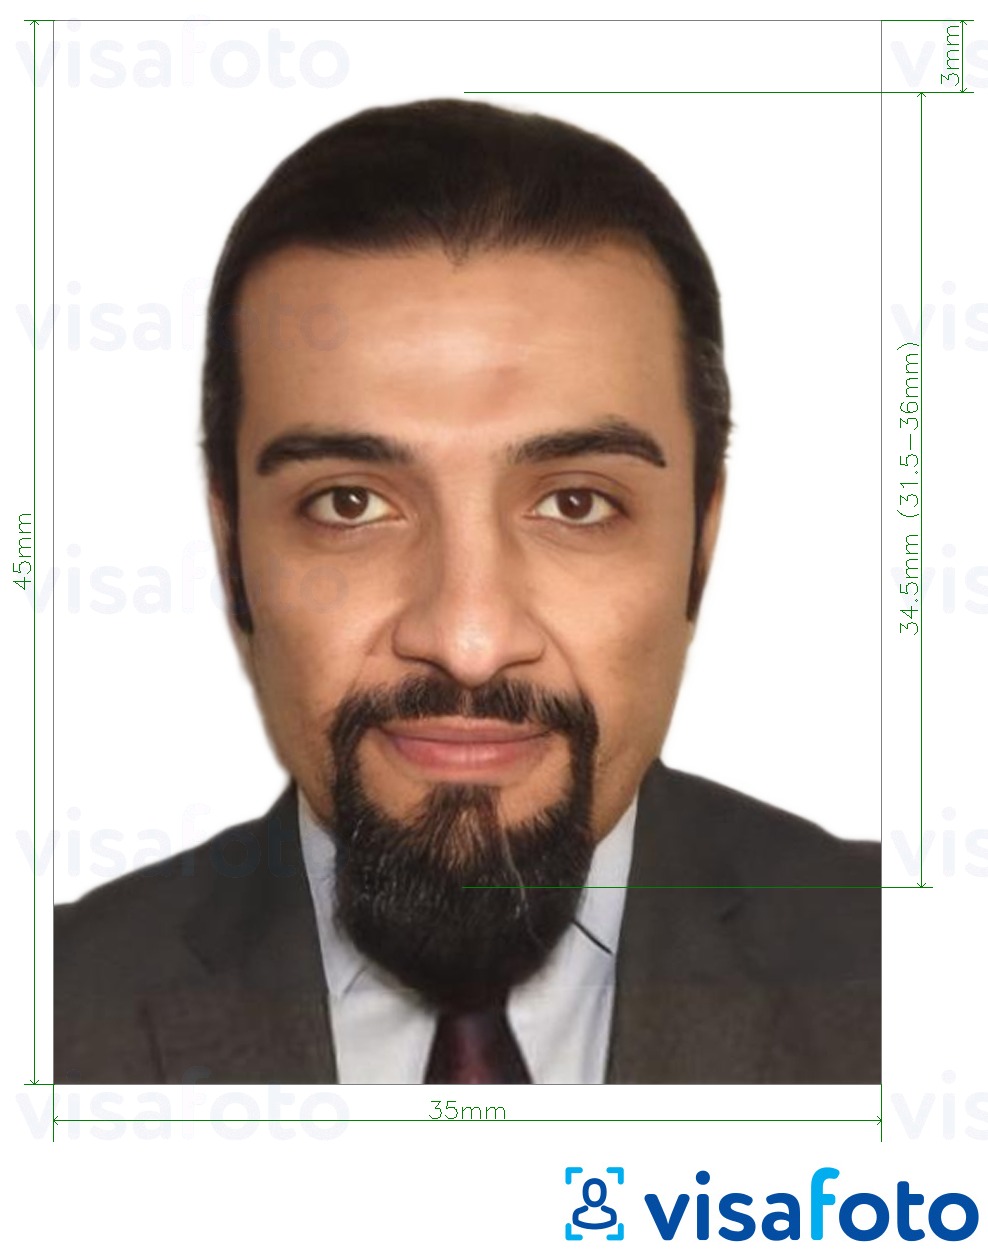 نمونه ی یک عکس برای ویزای مالی سومالی 35x45 میلیمتر (3.5x4.5 سانتیمتر) با مشخصات دقیق